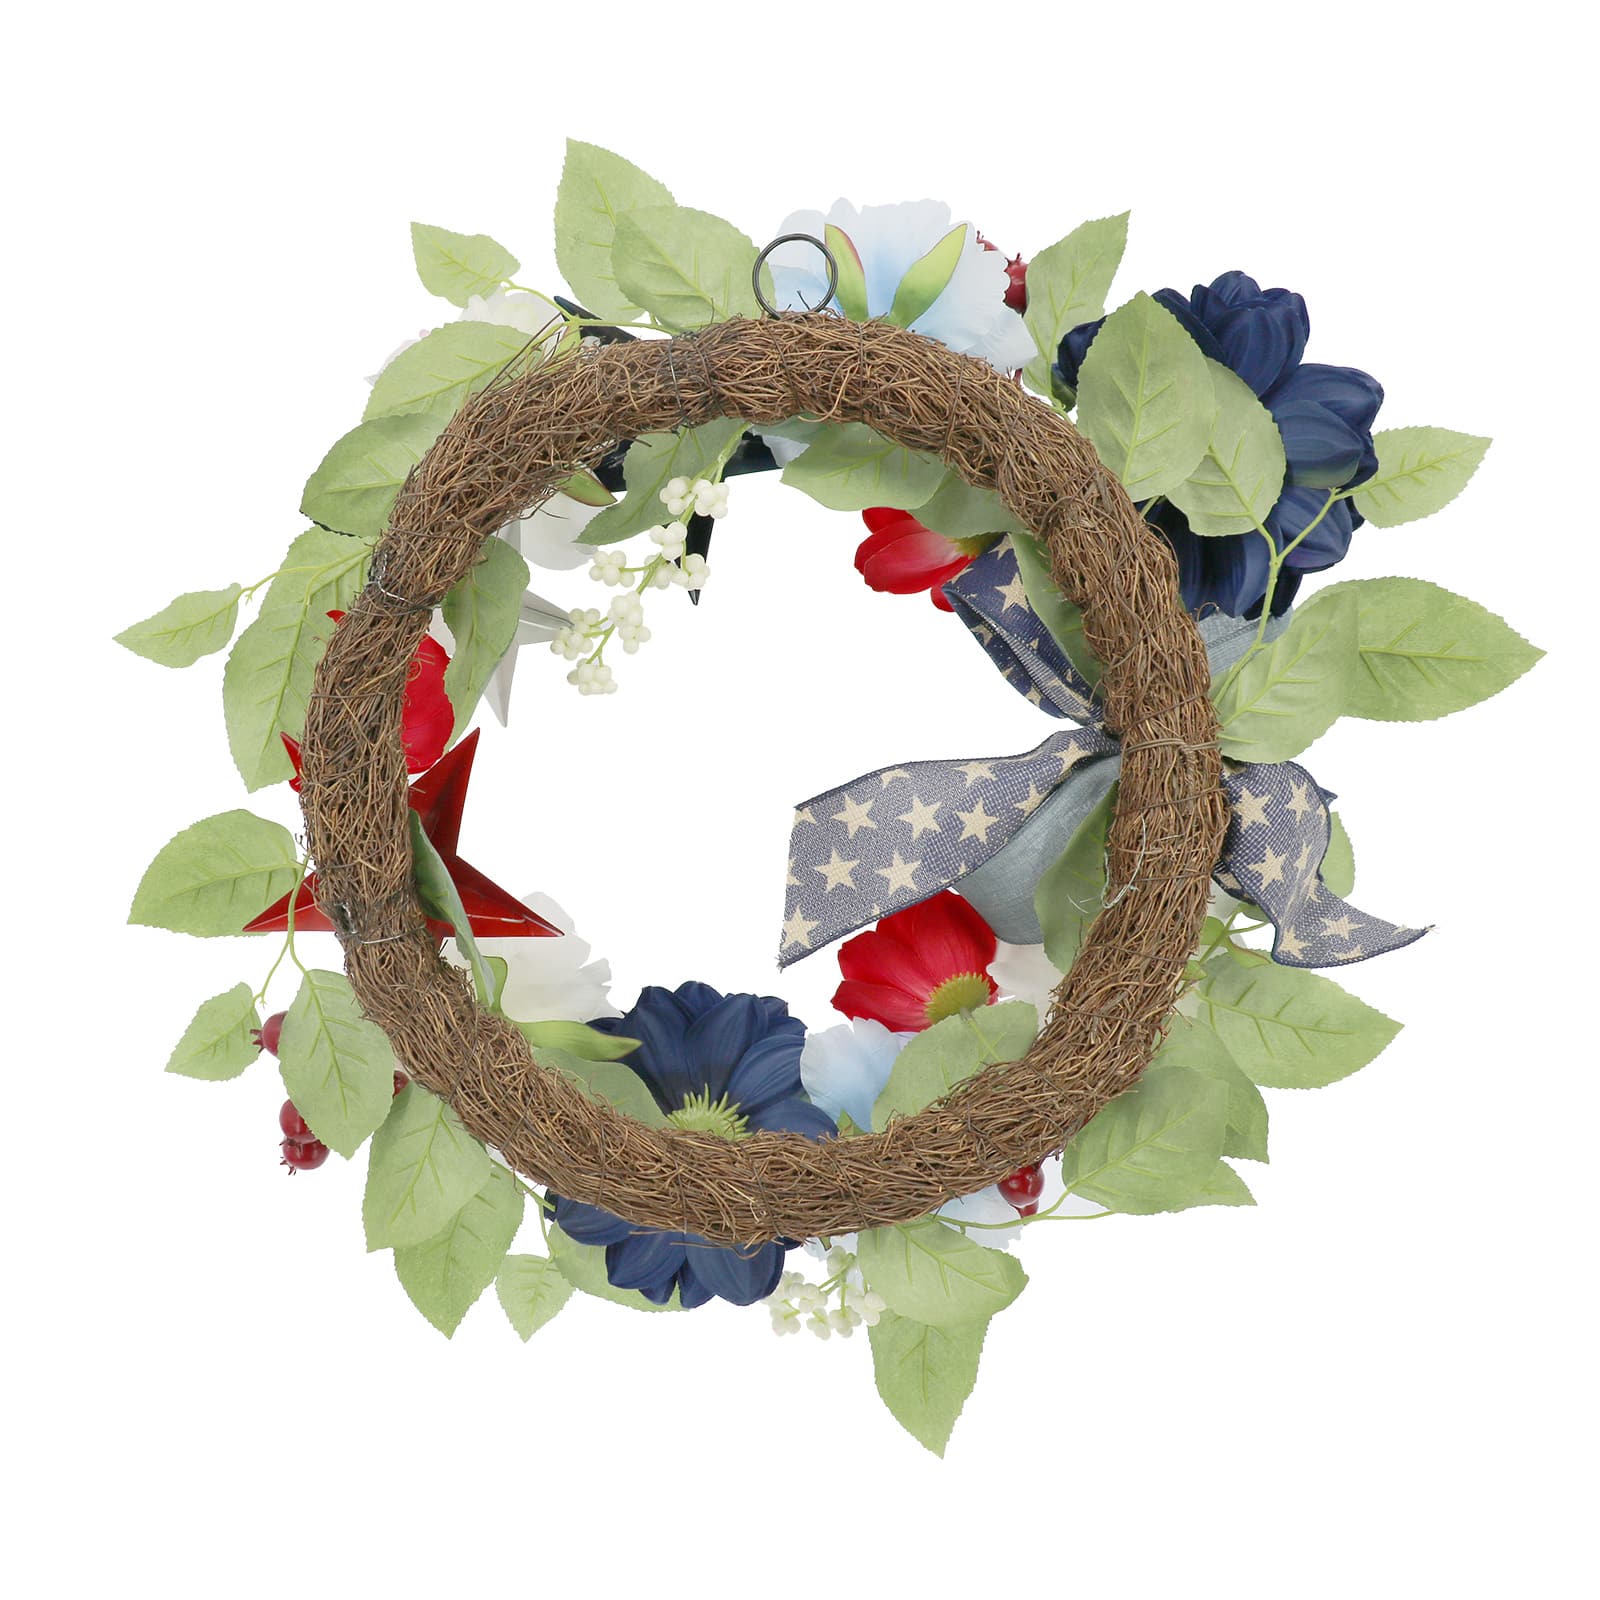 20&#x22; Red, White &#x26; Blue Peony Wreath by Celebrate It&#x2122;